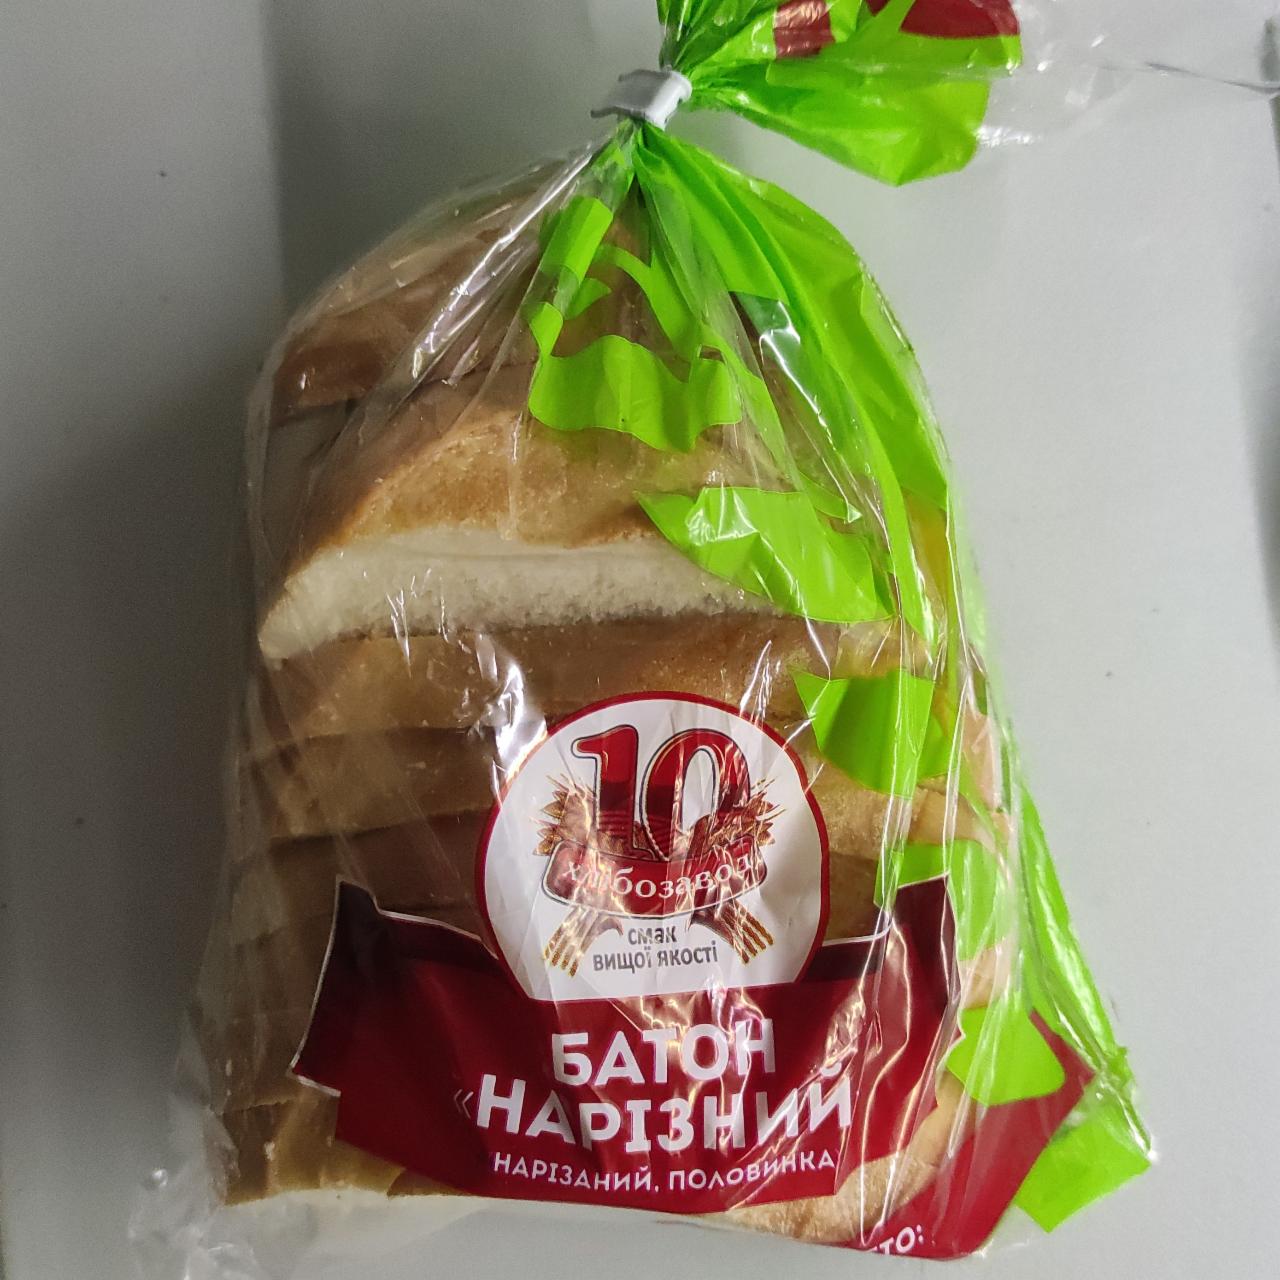 Фото - Батон нарізний 10 хлібозавод